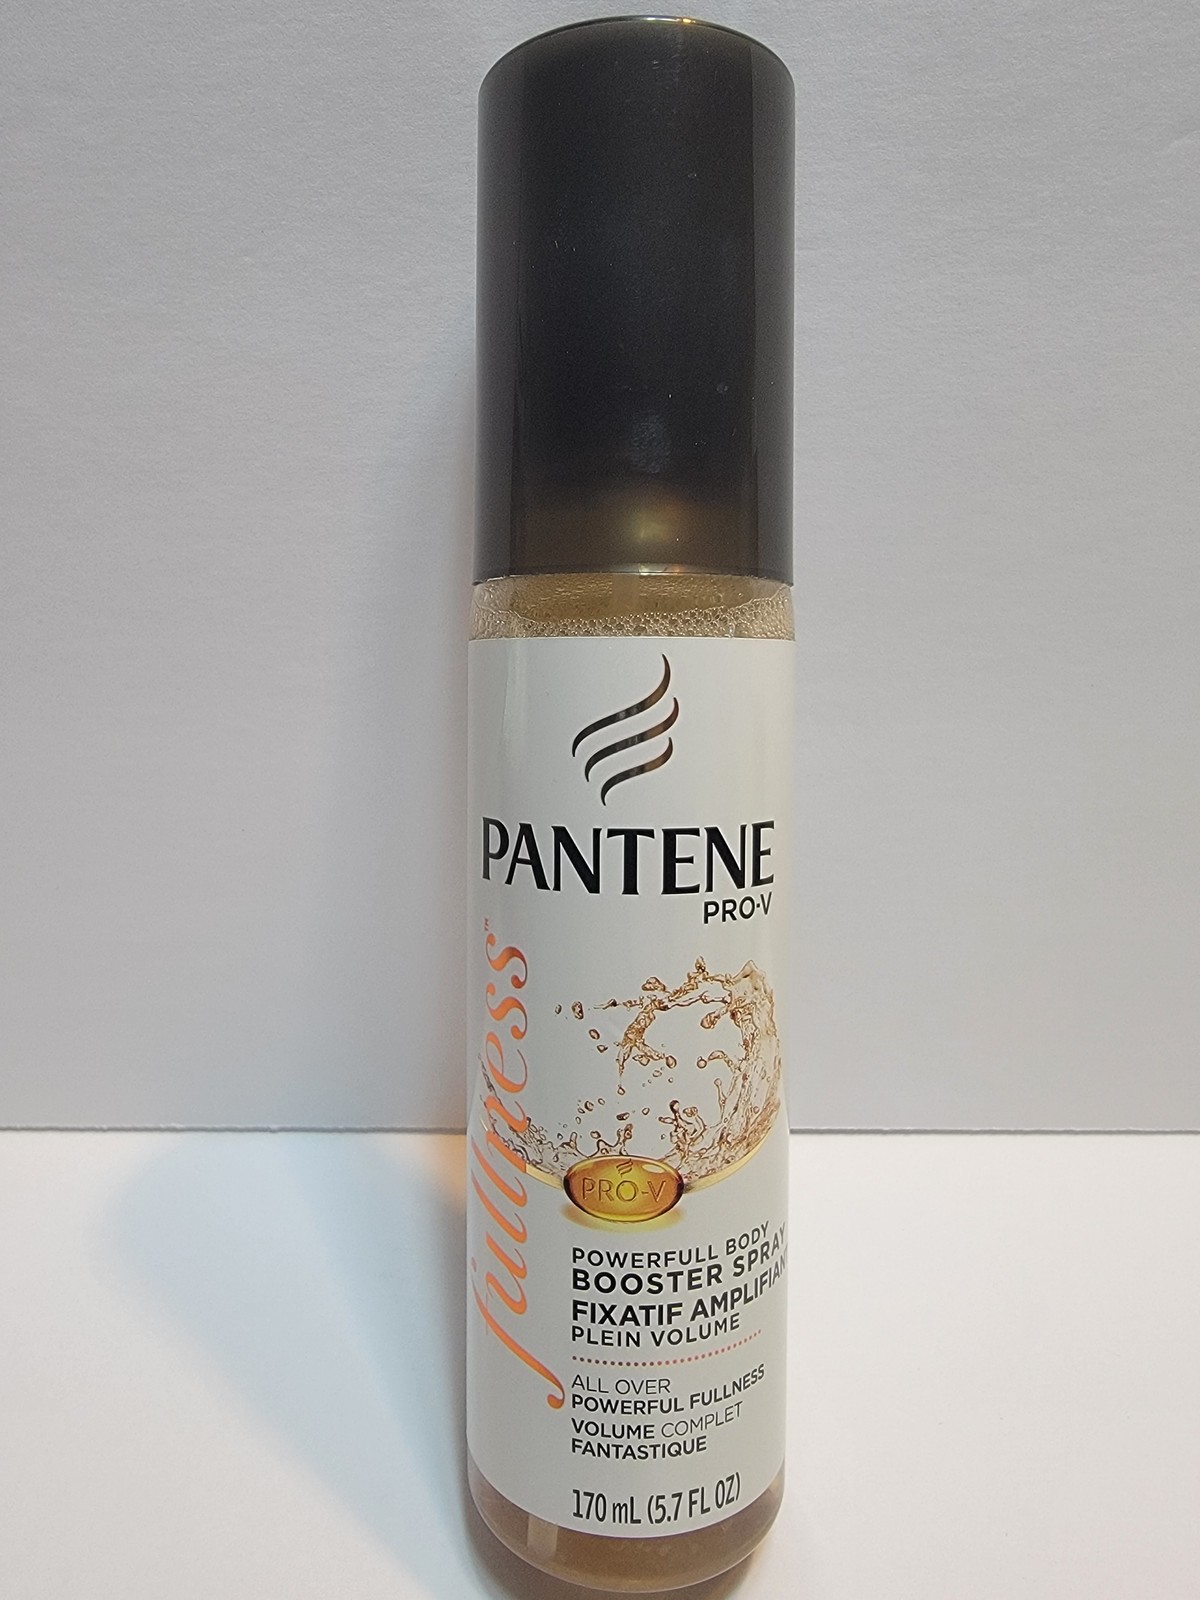 New Pantene Pro-V Fullness Powerfull Body Booster Spray Hair Care 5.7 FL OZ Rare - $45.00